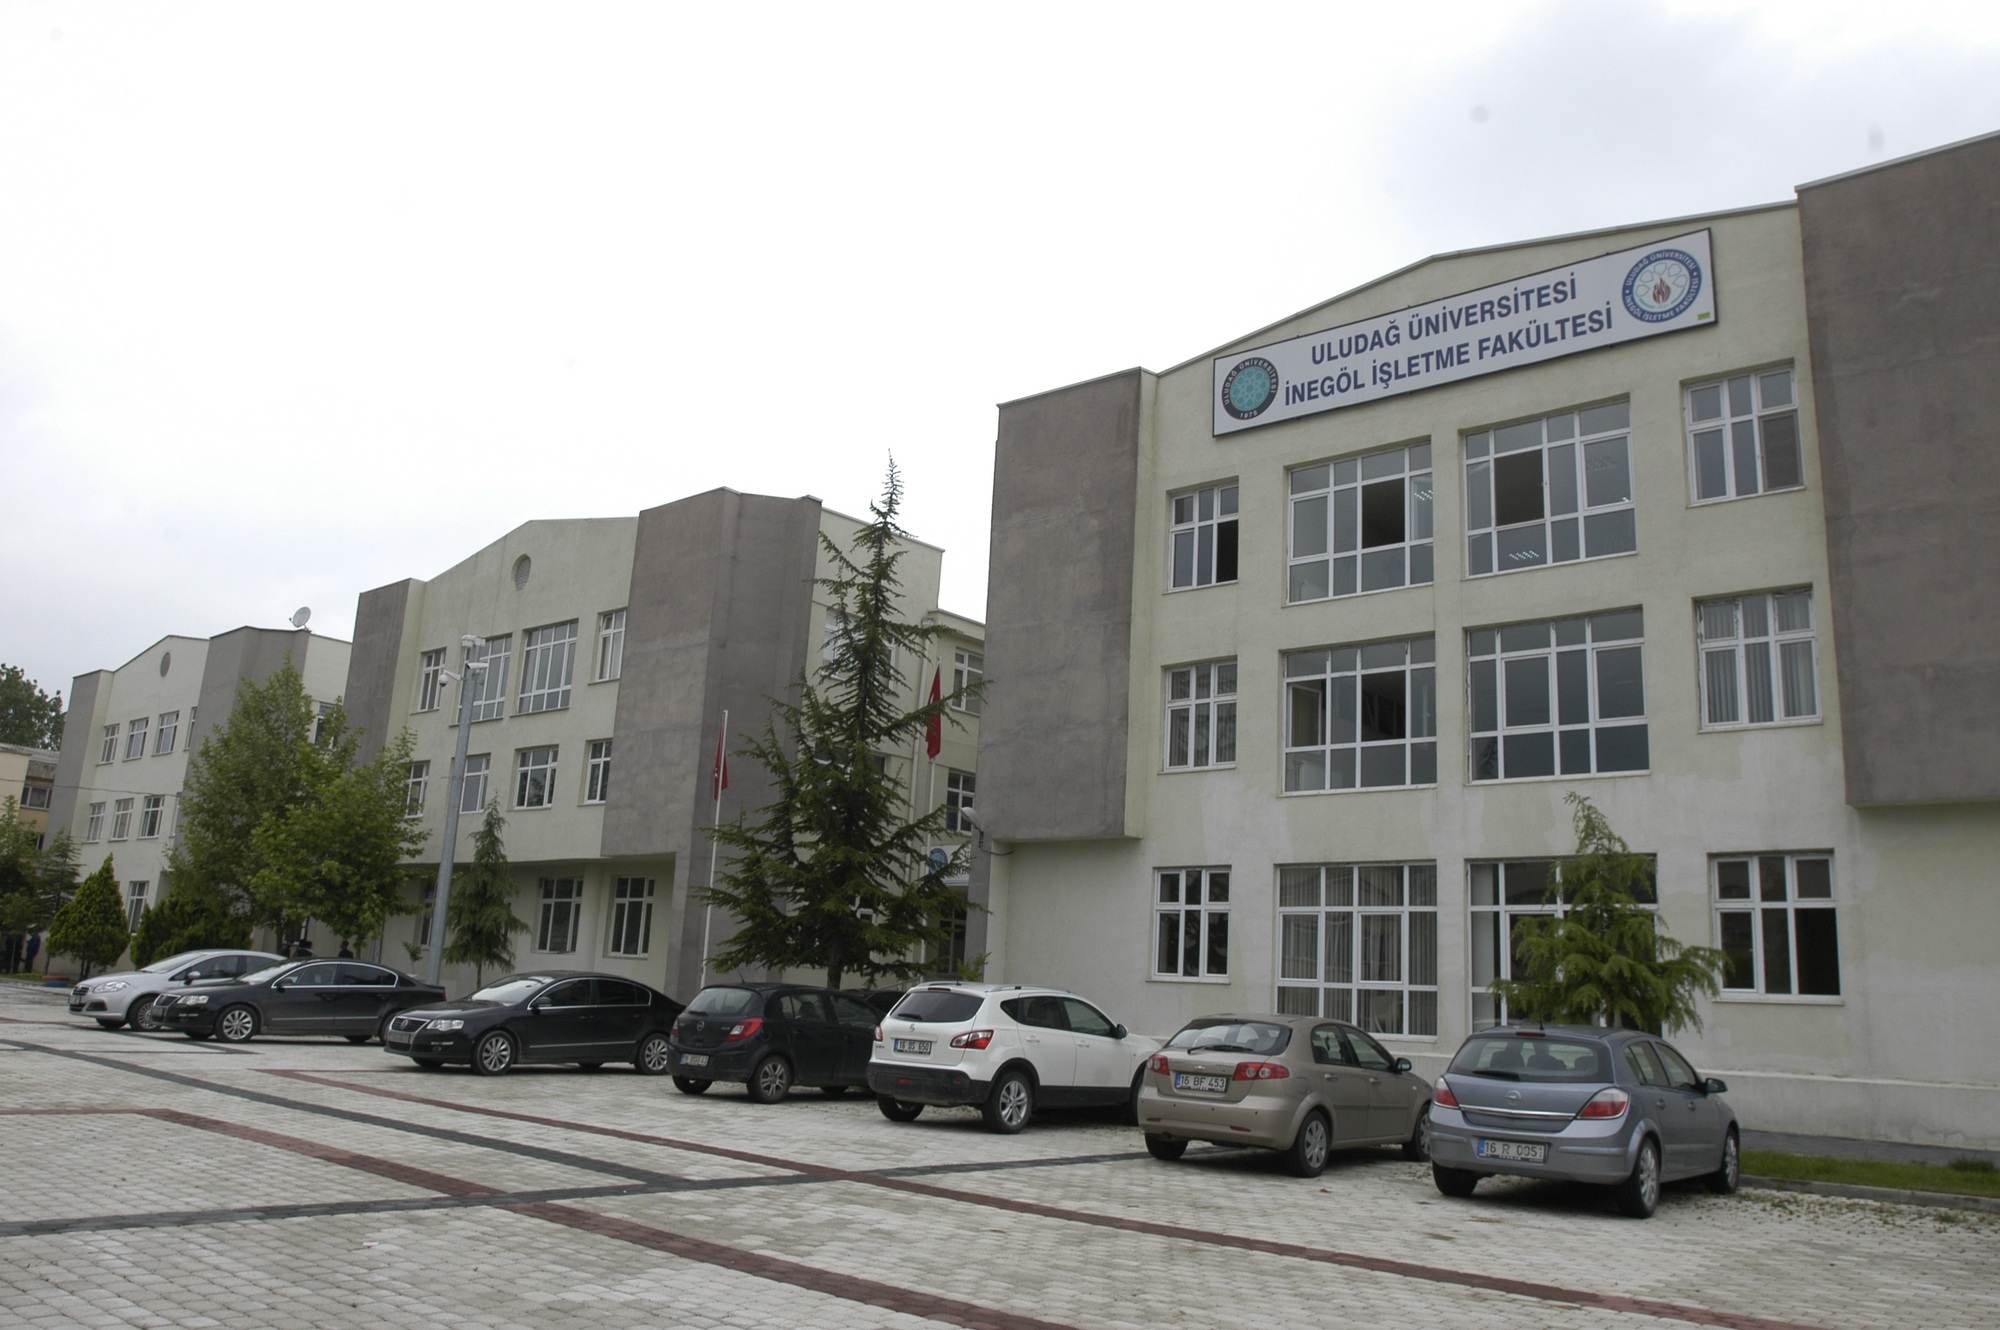 Uludağ Üniversitesi İnegöl İşletme Fakültesi